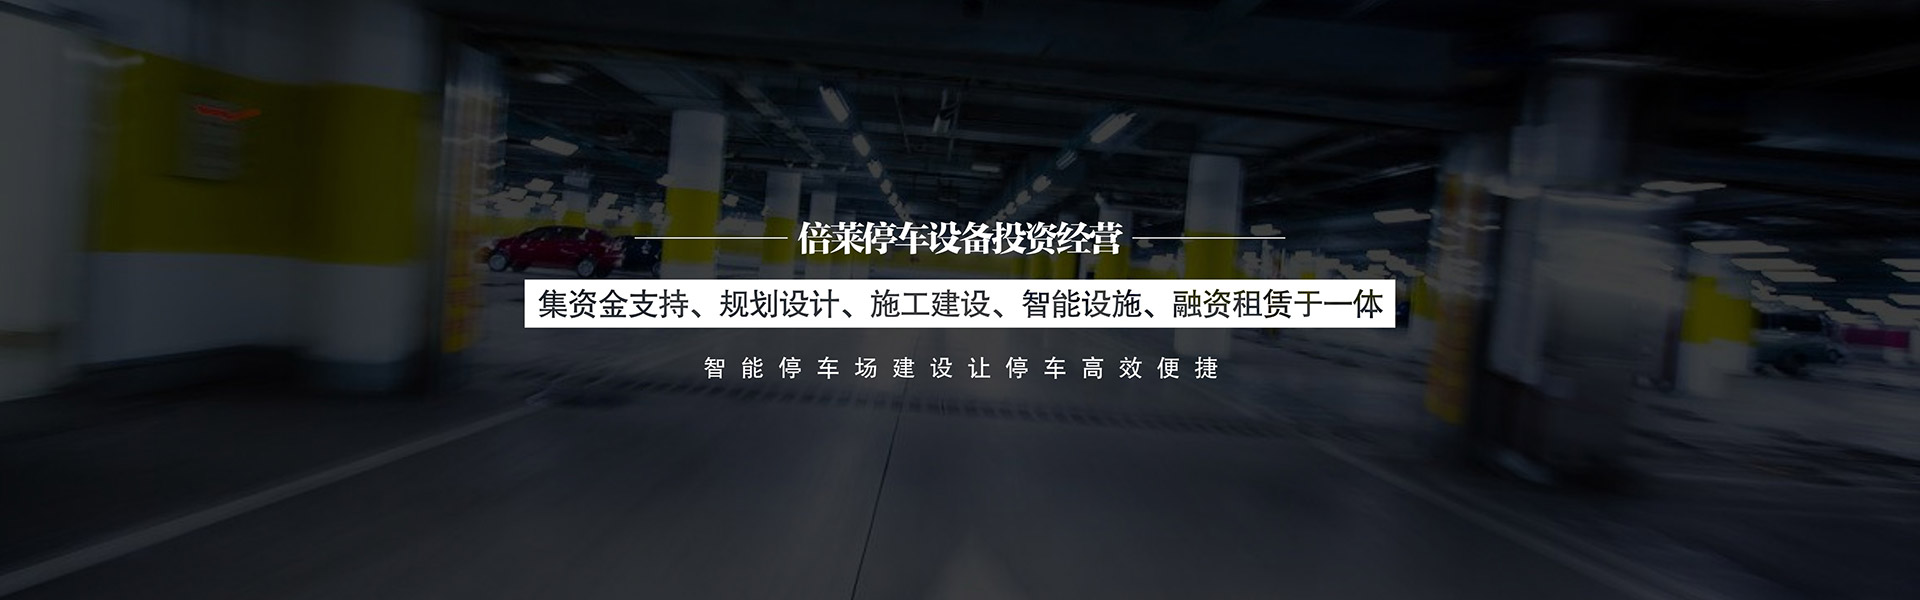 上海虛擬仿真逃生訓練隧道,上海虛擬仿真巨投,上海虛擬仿真科學點餐設備,上海虛擬仿真模擬結繩訓練,上海虛擬仿真VR賽馬賽馬,